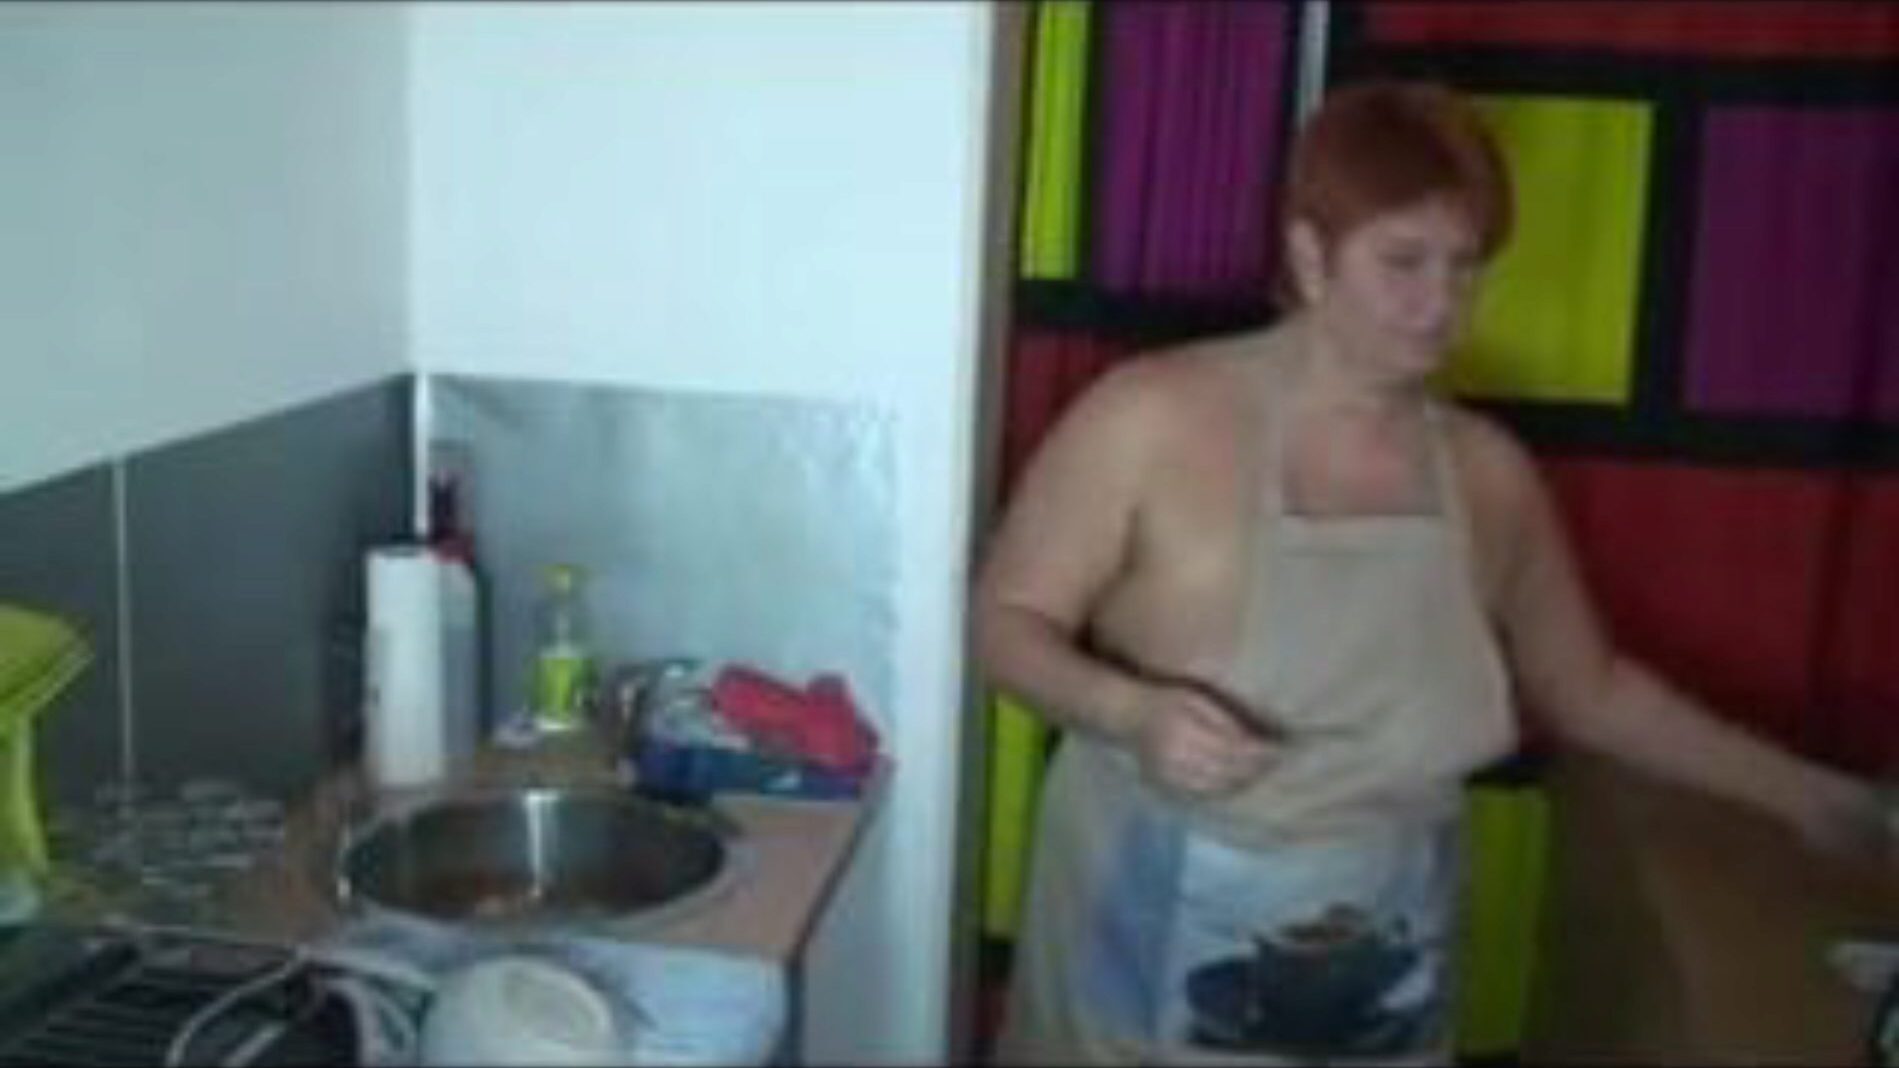 عند غسل الأطباق في المطبخ ، الاباحية المجانية 55: شاهد xhamster عند غسل الأطباق في مقطع المطبخ على xhamster ، موقع أنبوب الجنس العملاق الذي يحتوي على أطنان من مقاطع الفيديو الإباحية الألمانية المجانية الأكثر سخونة